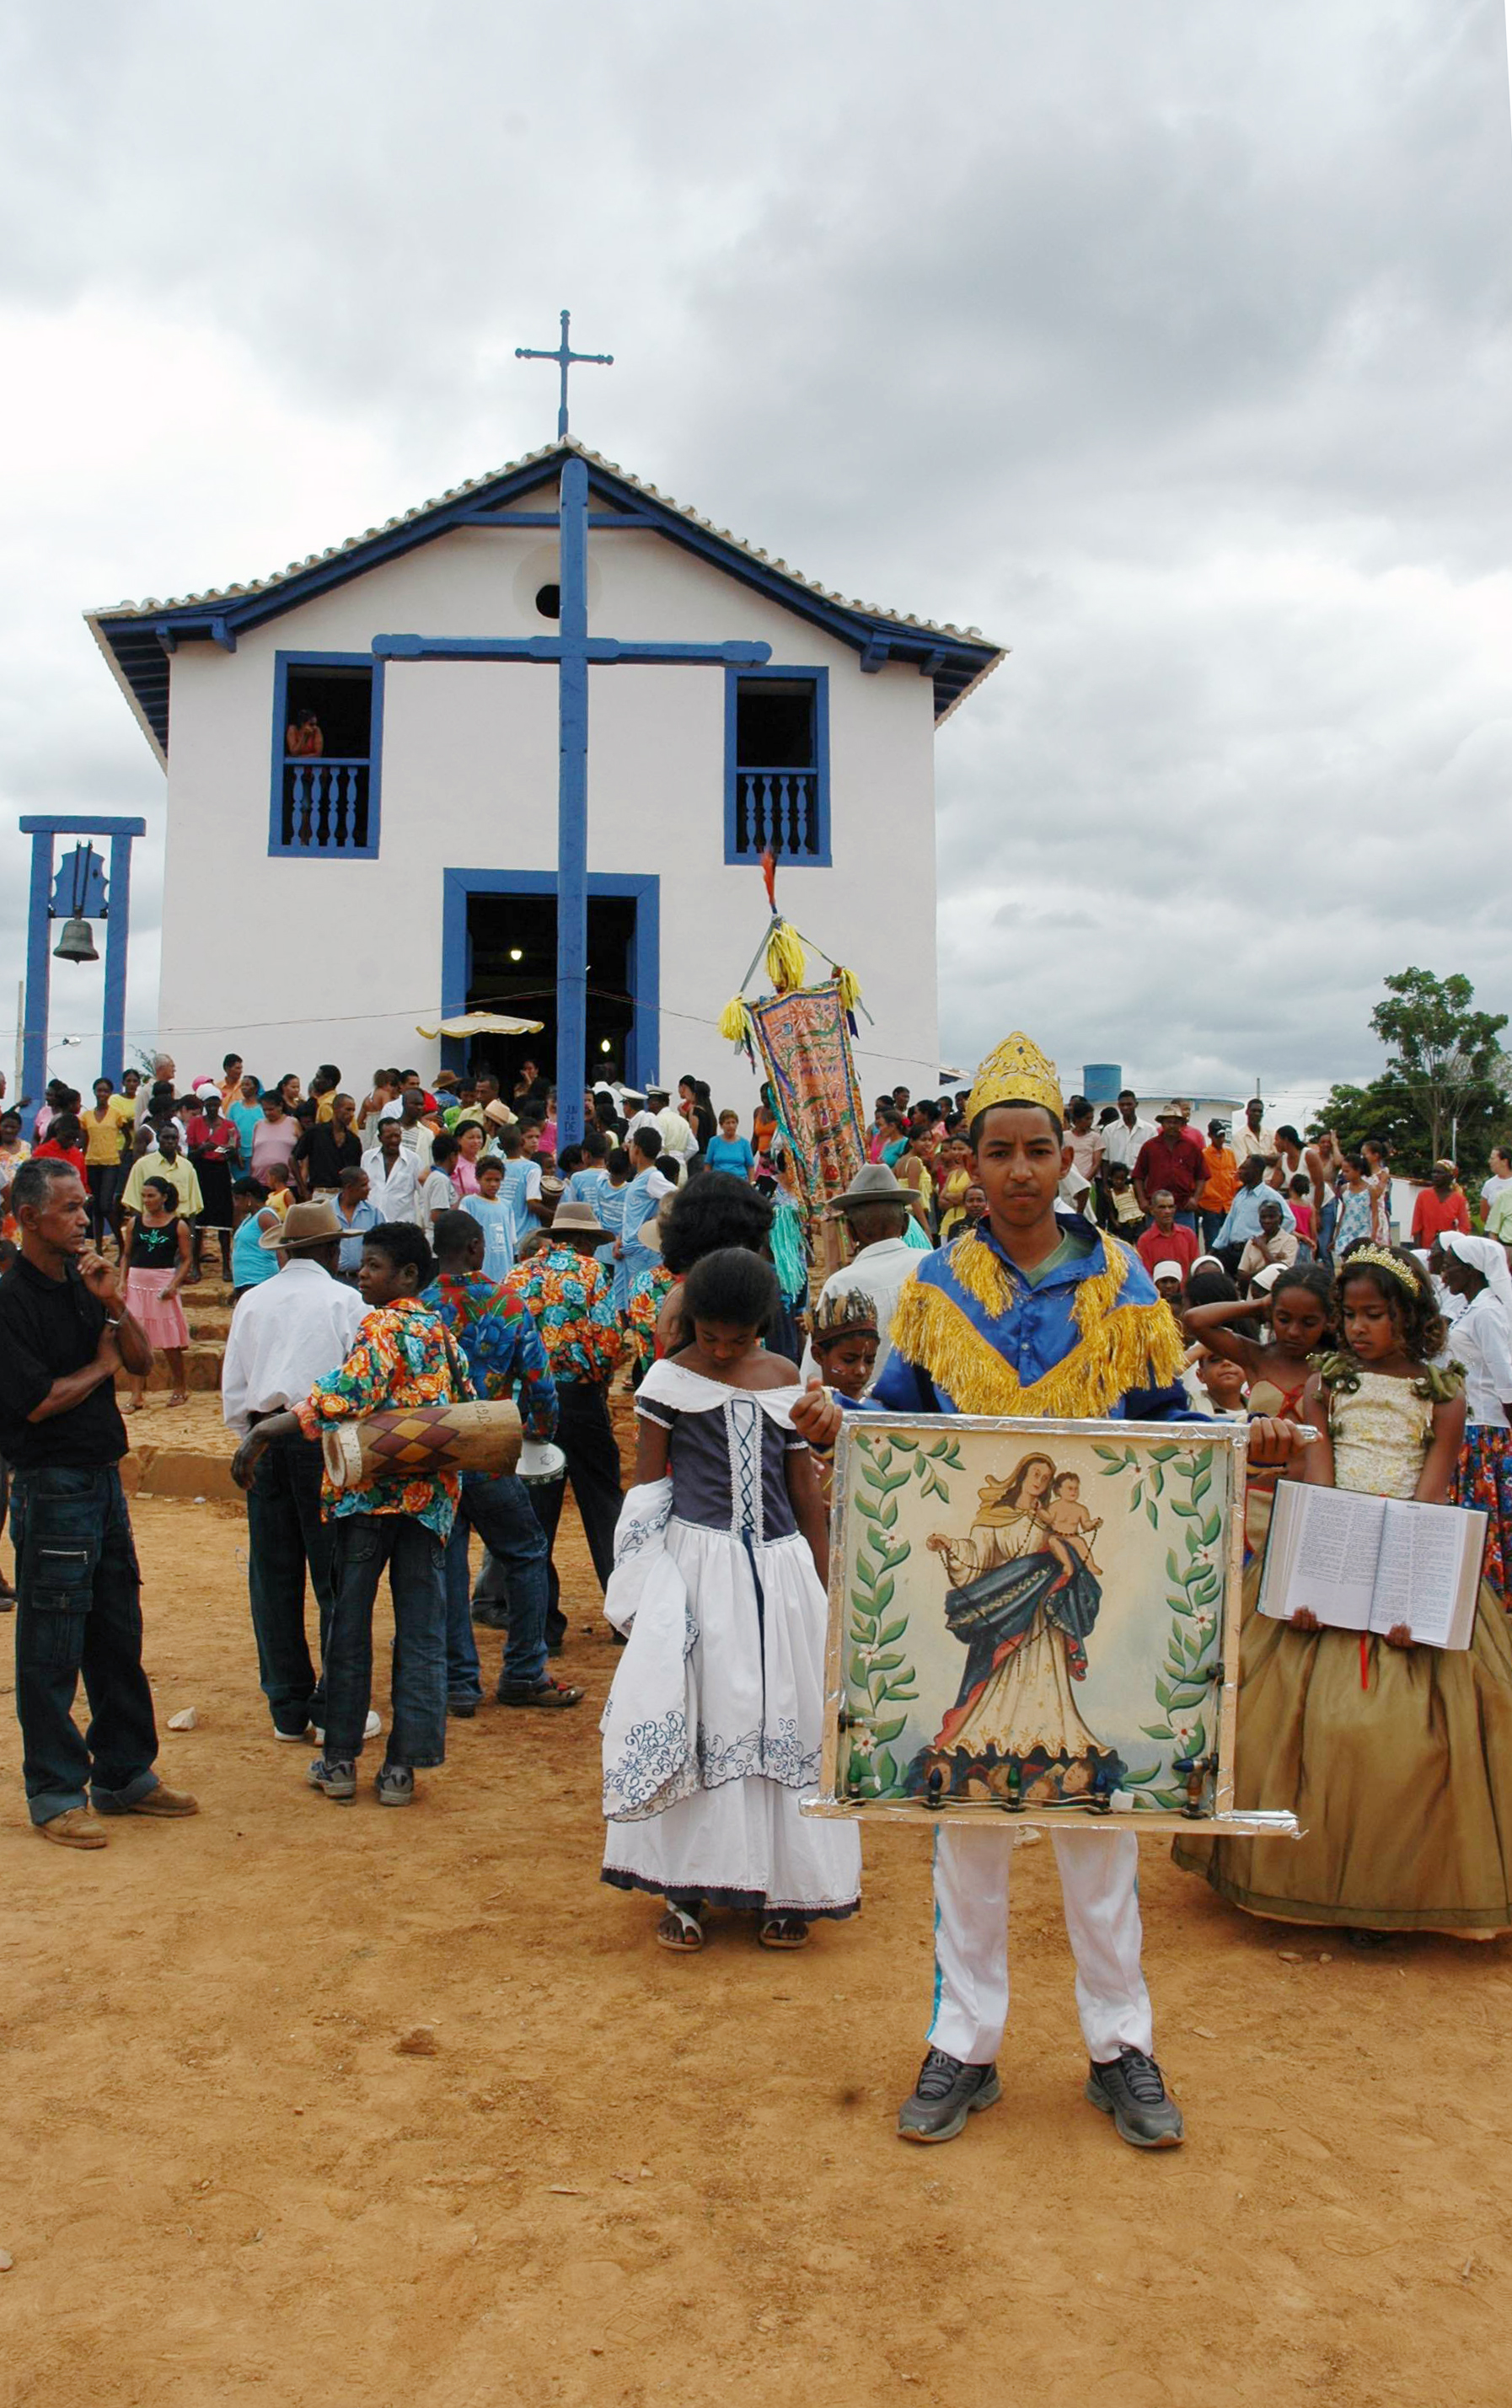 Jornada Mineira do Patrimônio Cultural oferece programação em diversas regiões do Estado